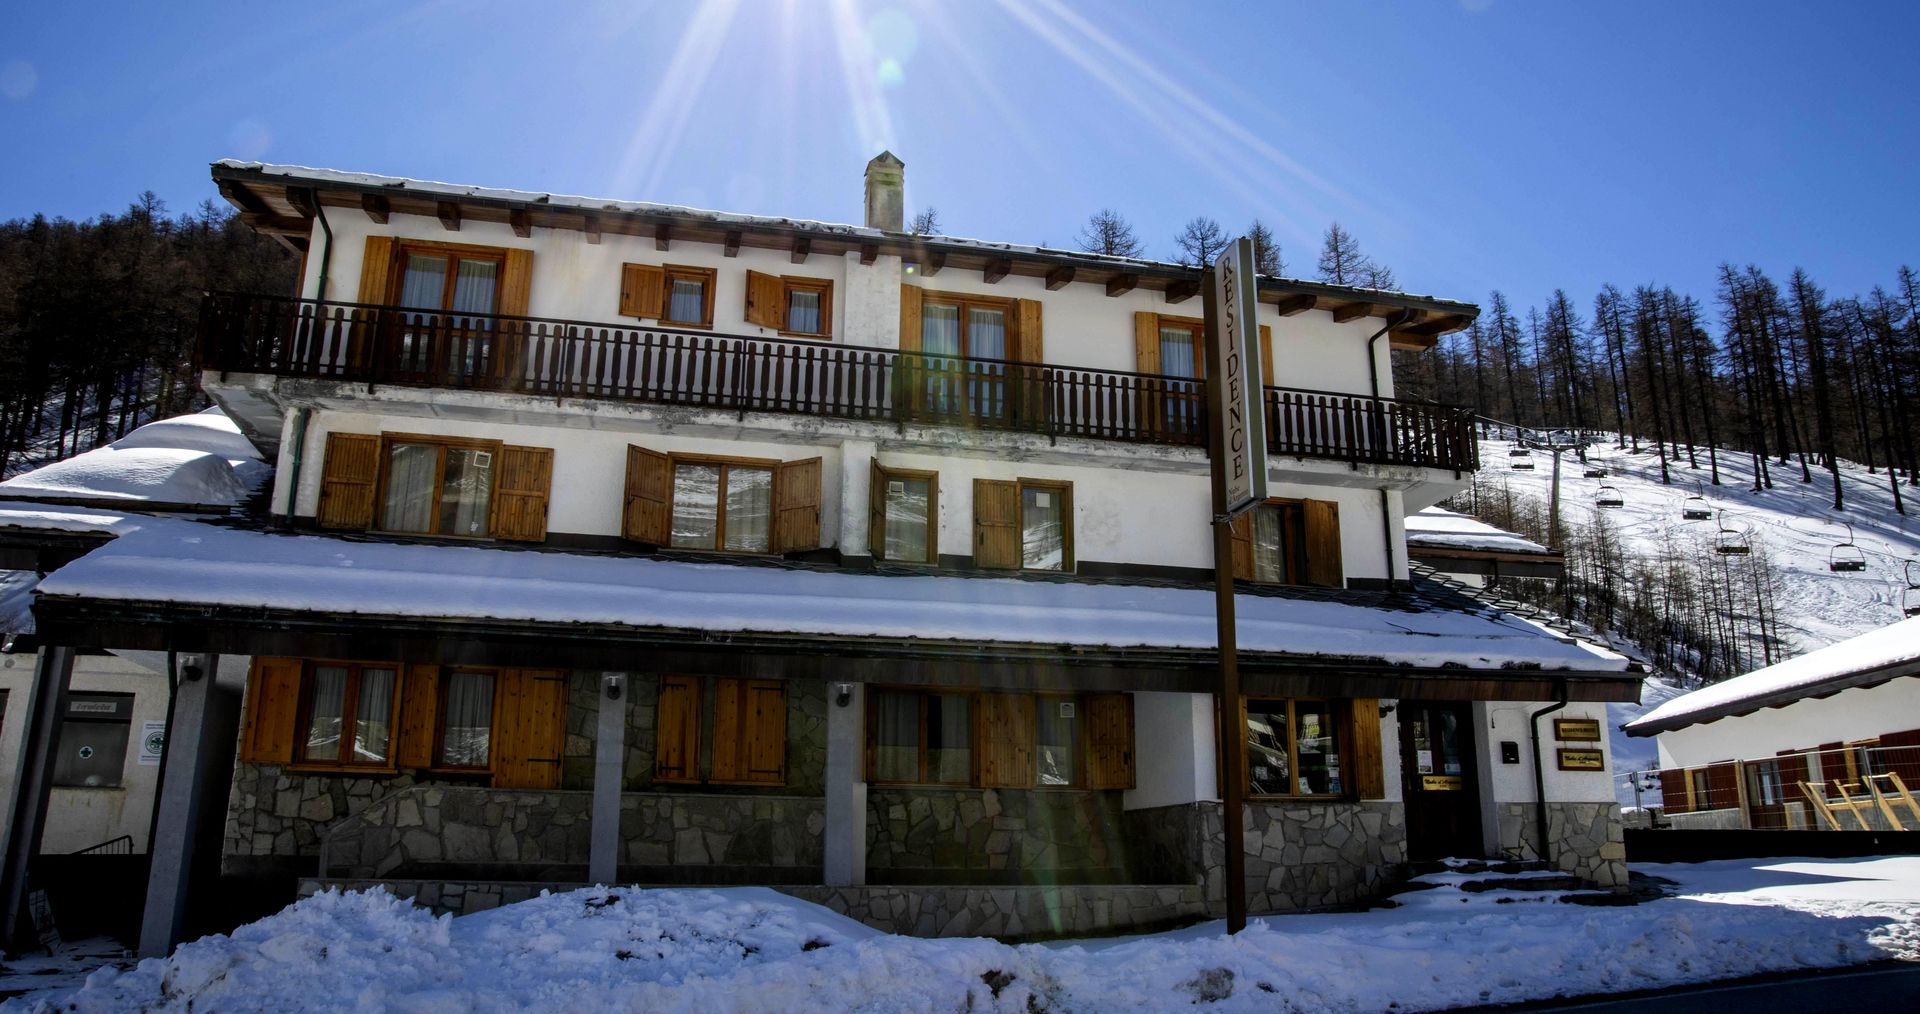 Meer info over Residence Nube d'Argento  bij Wintertrex